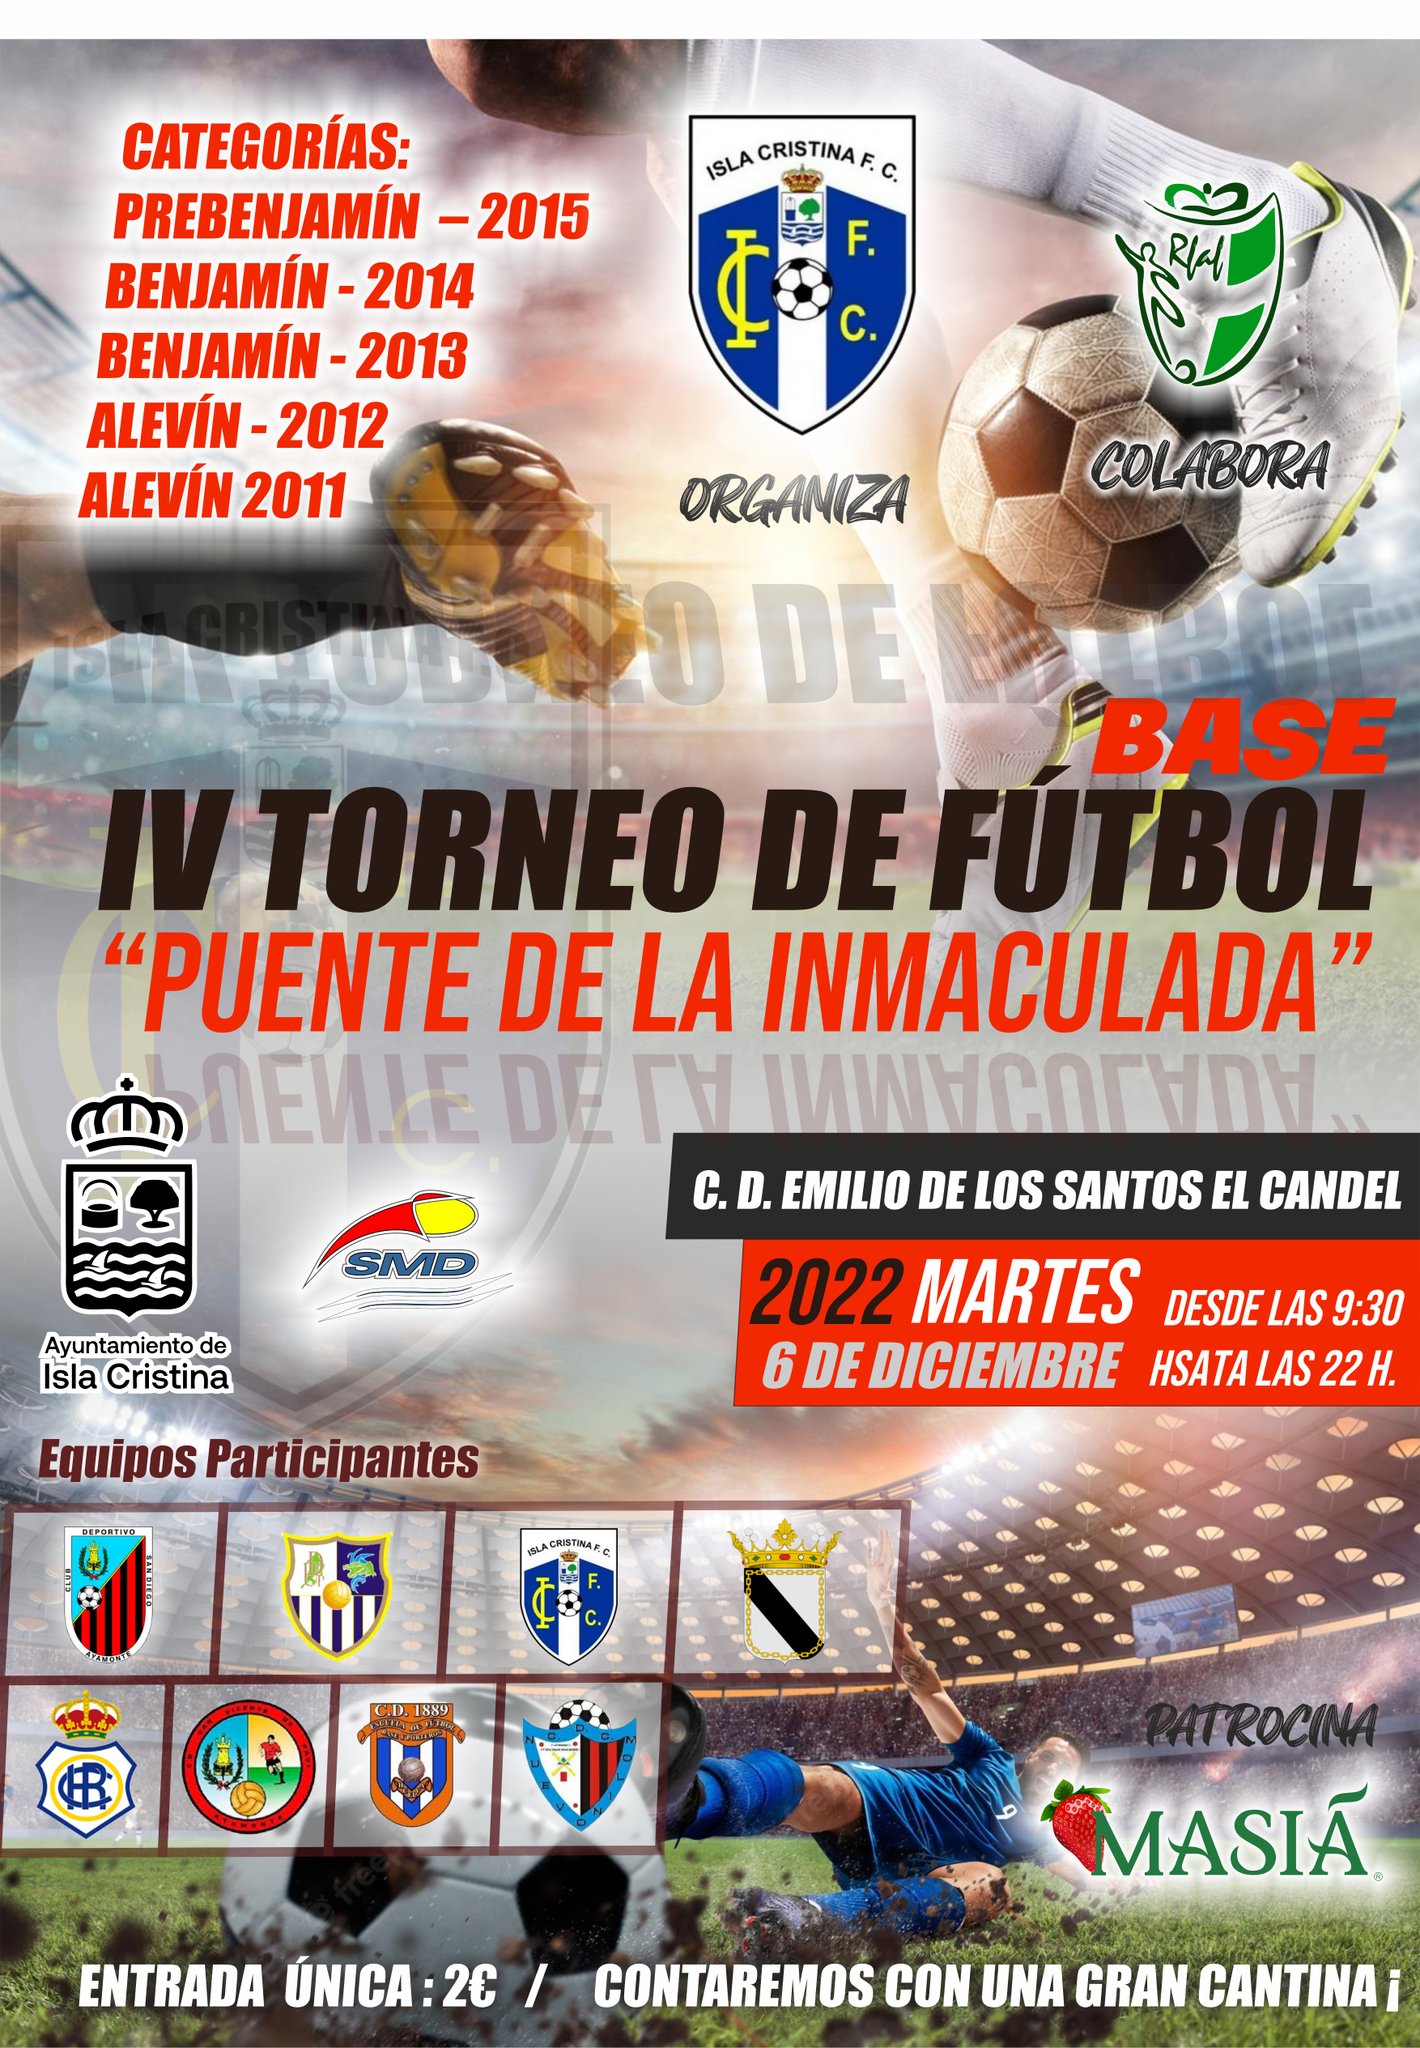 El Isla Cristina organiza el I Torneo de Fútbol Base “Puente de la Inmaculada”